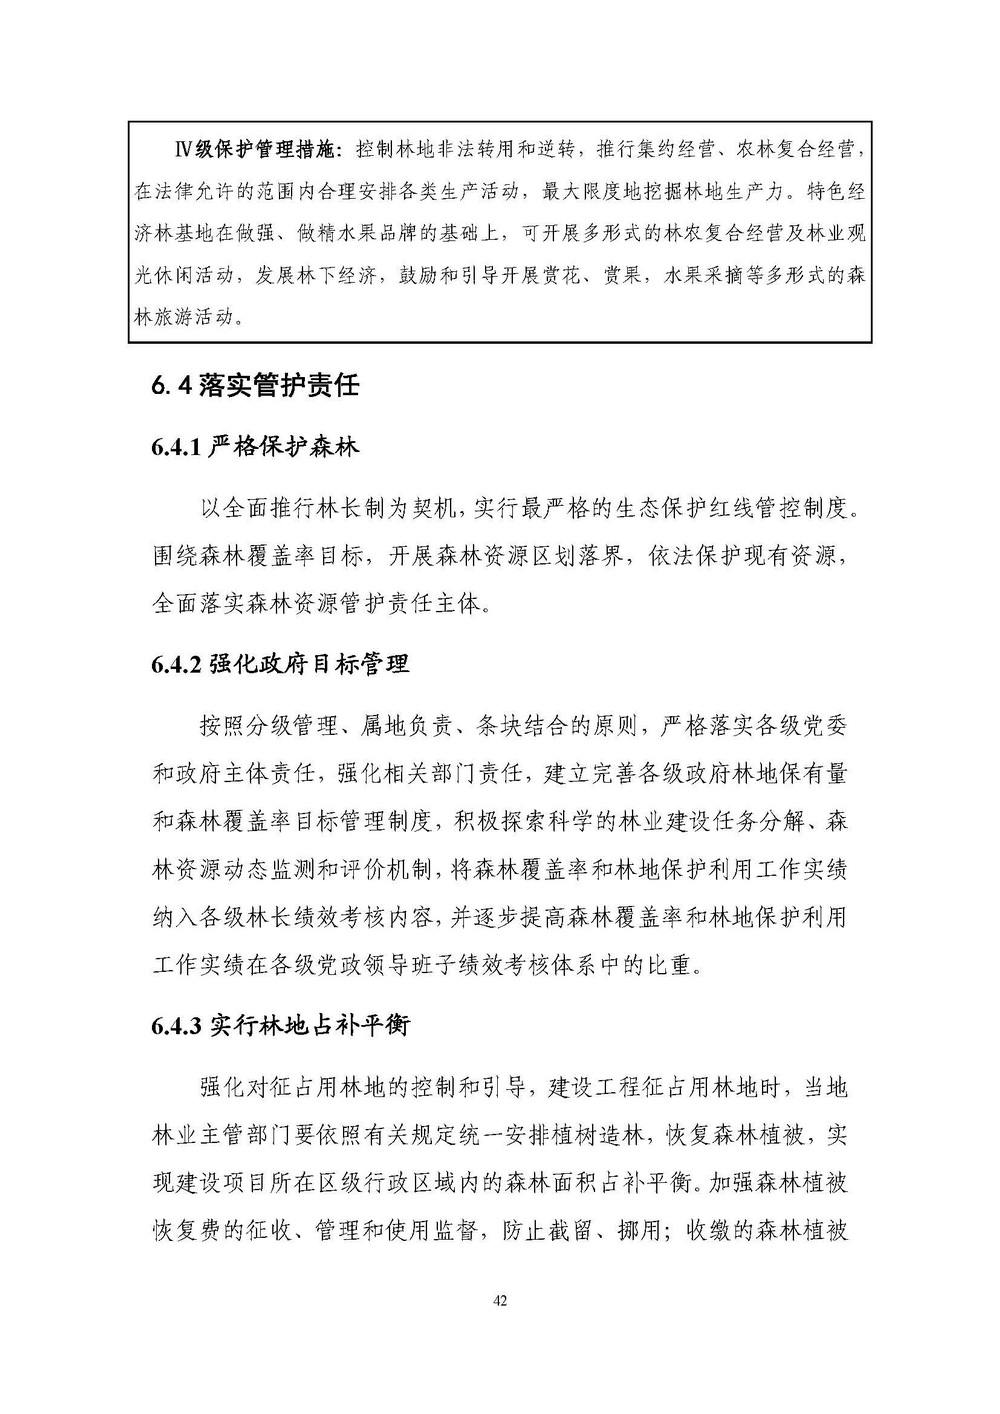 上海市森林和林地保护利用规划文本 公开稿 附图_页面_45.jpg